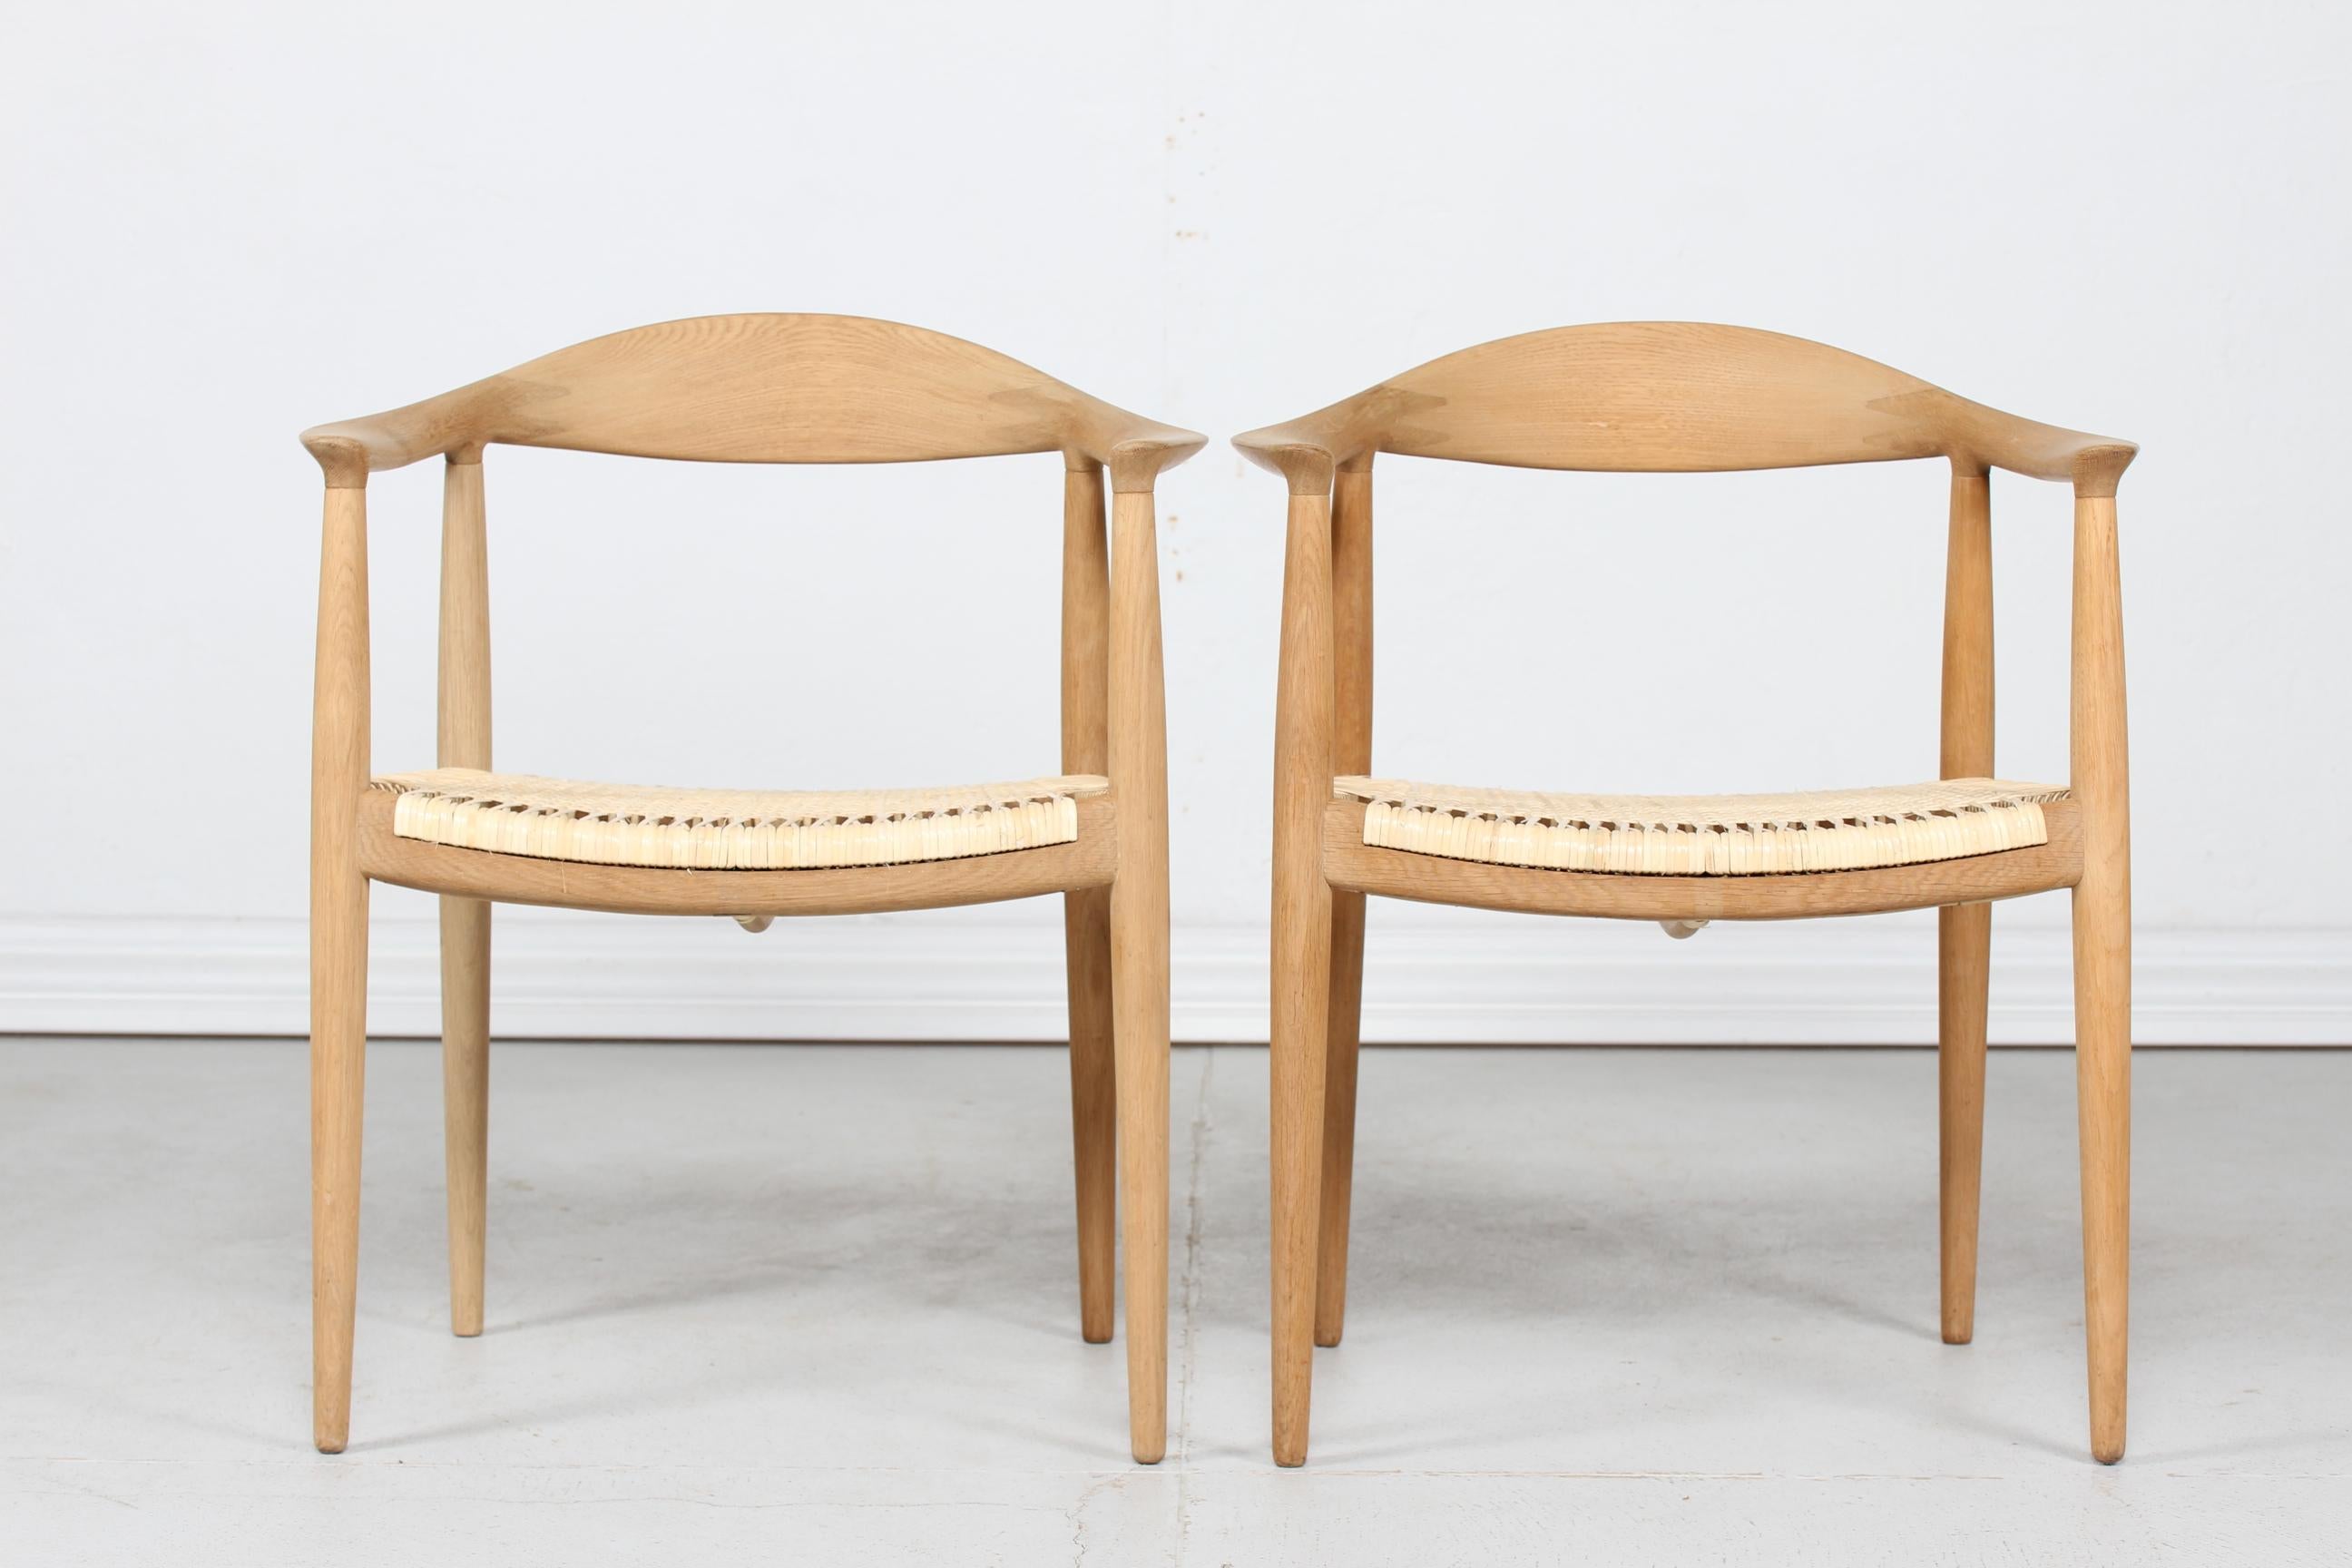 Une paire de The chair ou The round chair modèle JH 503 du designer danois Hans J. Wegner (1914-2007) 
Ces chaises ont été fabriquées dans les années 1960 par Johannes Hansen à Copenhague
Ces fauteuils emblématiques sont en chêne massif avec des